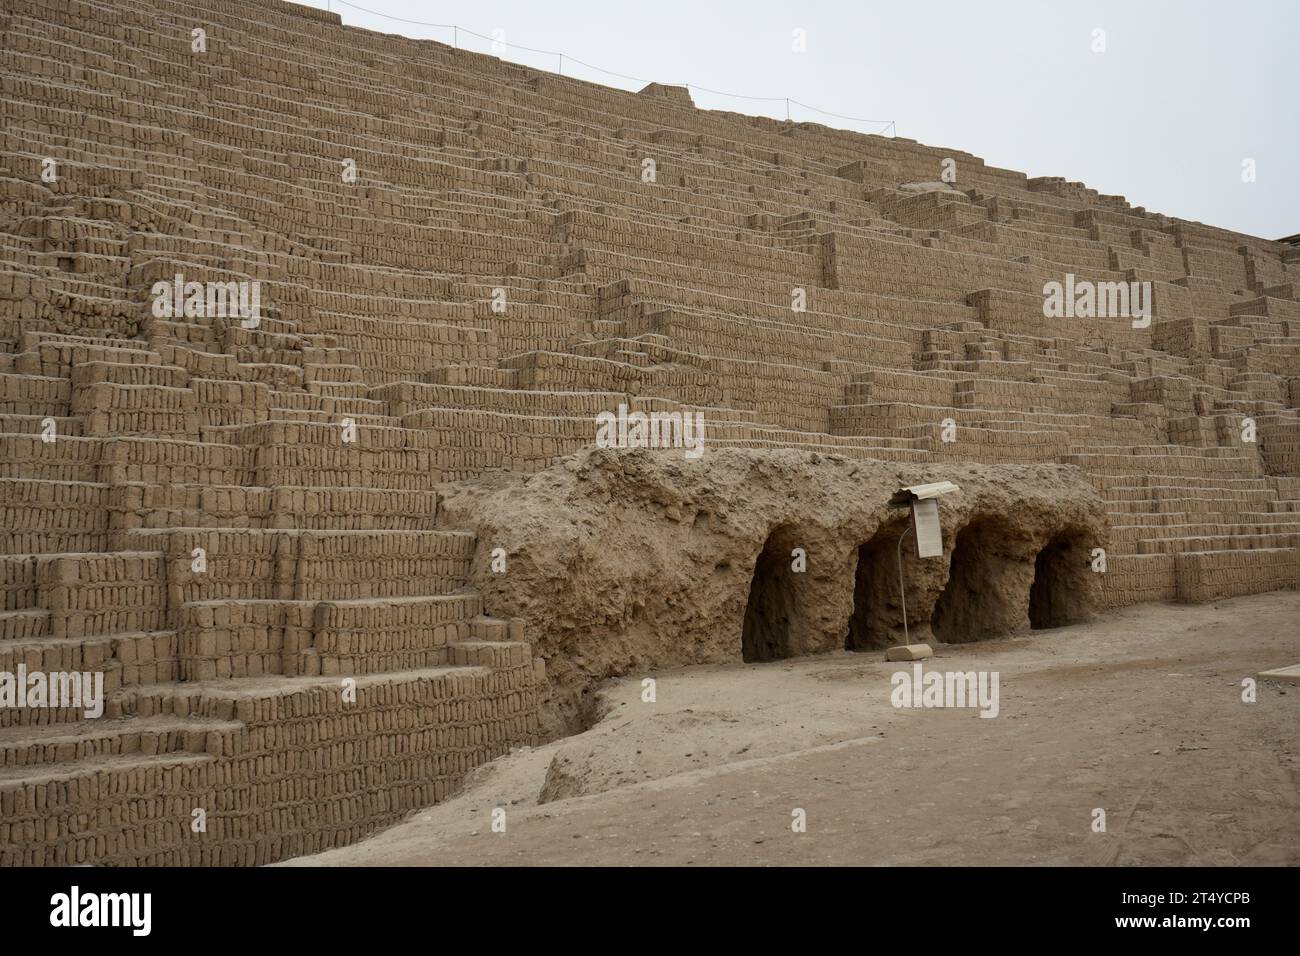 Huaca Pucllana, Mud bricks of the Ancient Peruvian Pyramid. Miraflores, Peru. Stock Photo